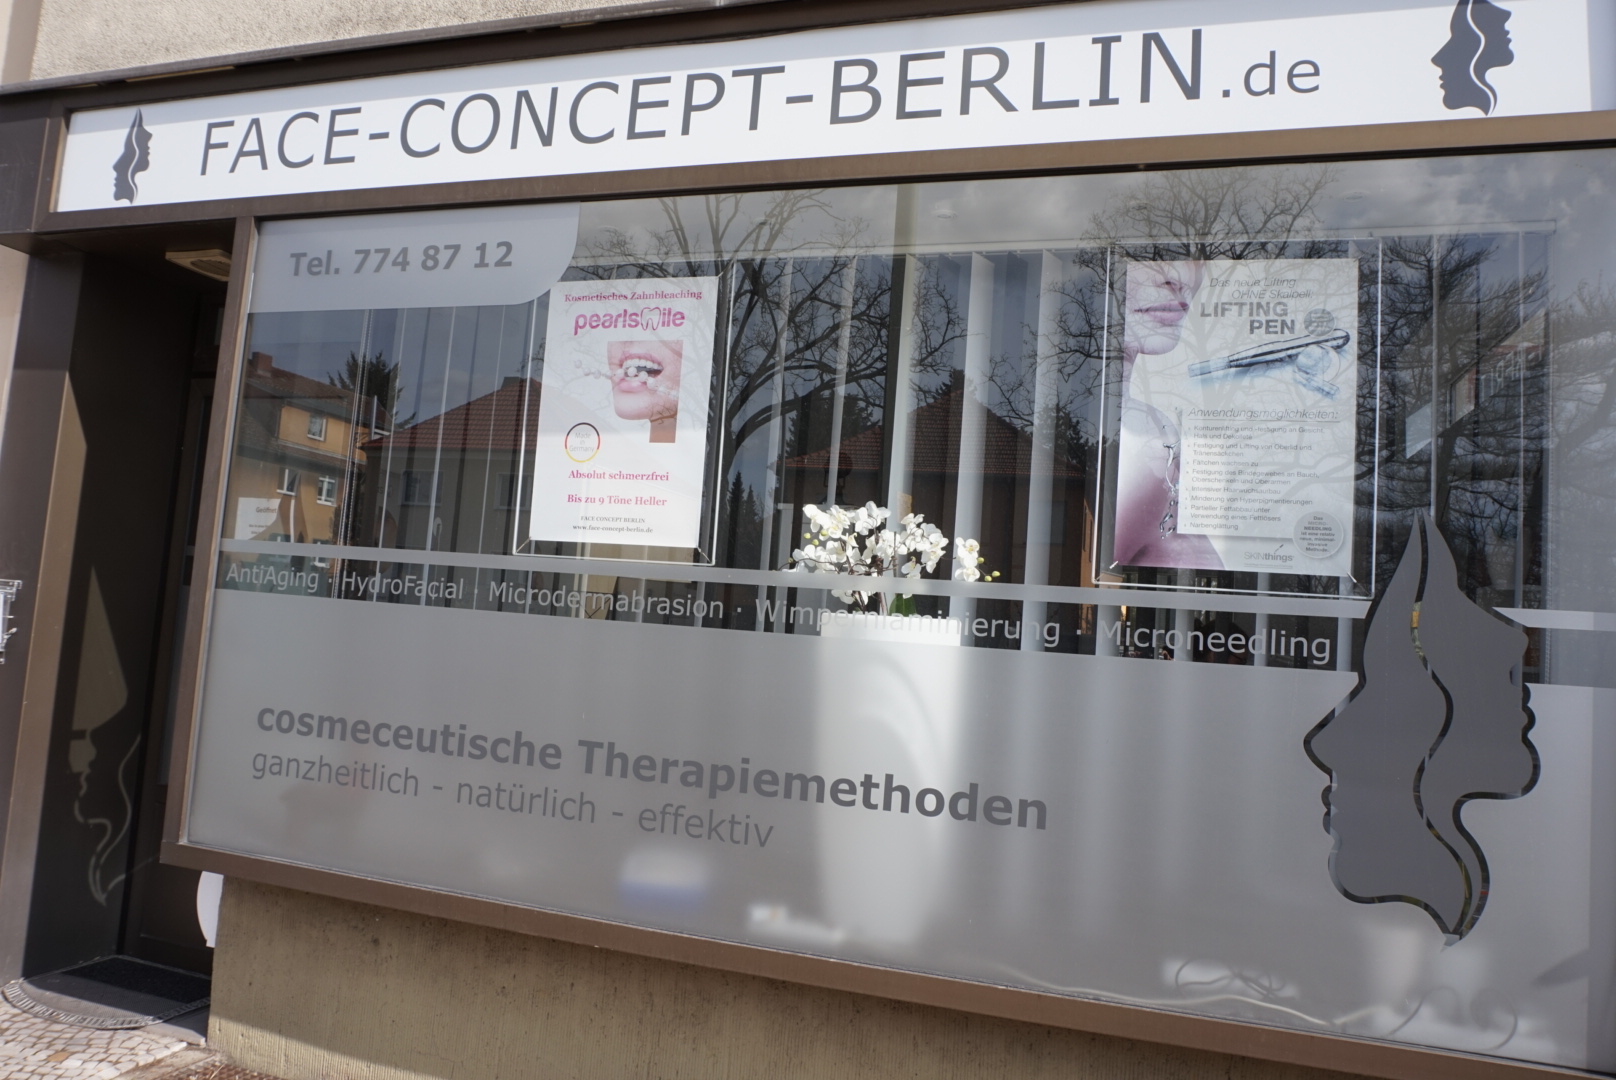 Face Concept Berlin Berlin Steglitz, Anti Aging, Gesichtsbehandlungen, Kosmetikstudio für cosmeceutische Therapien